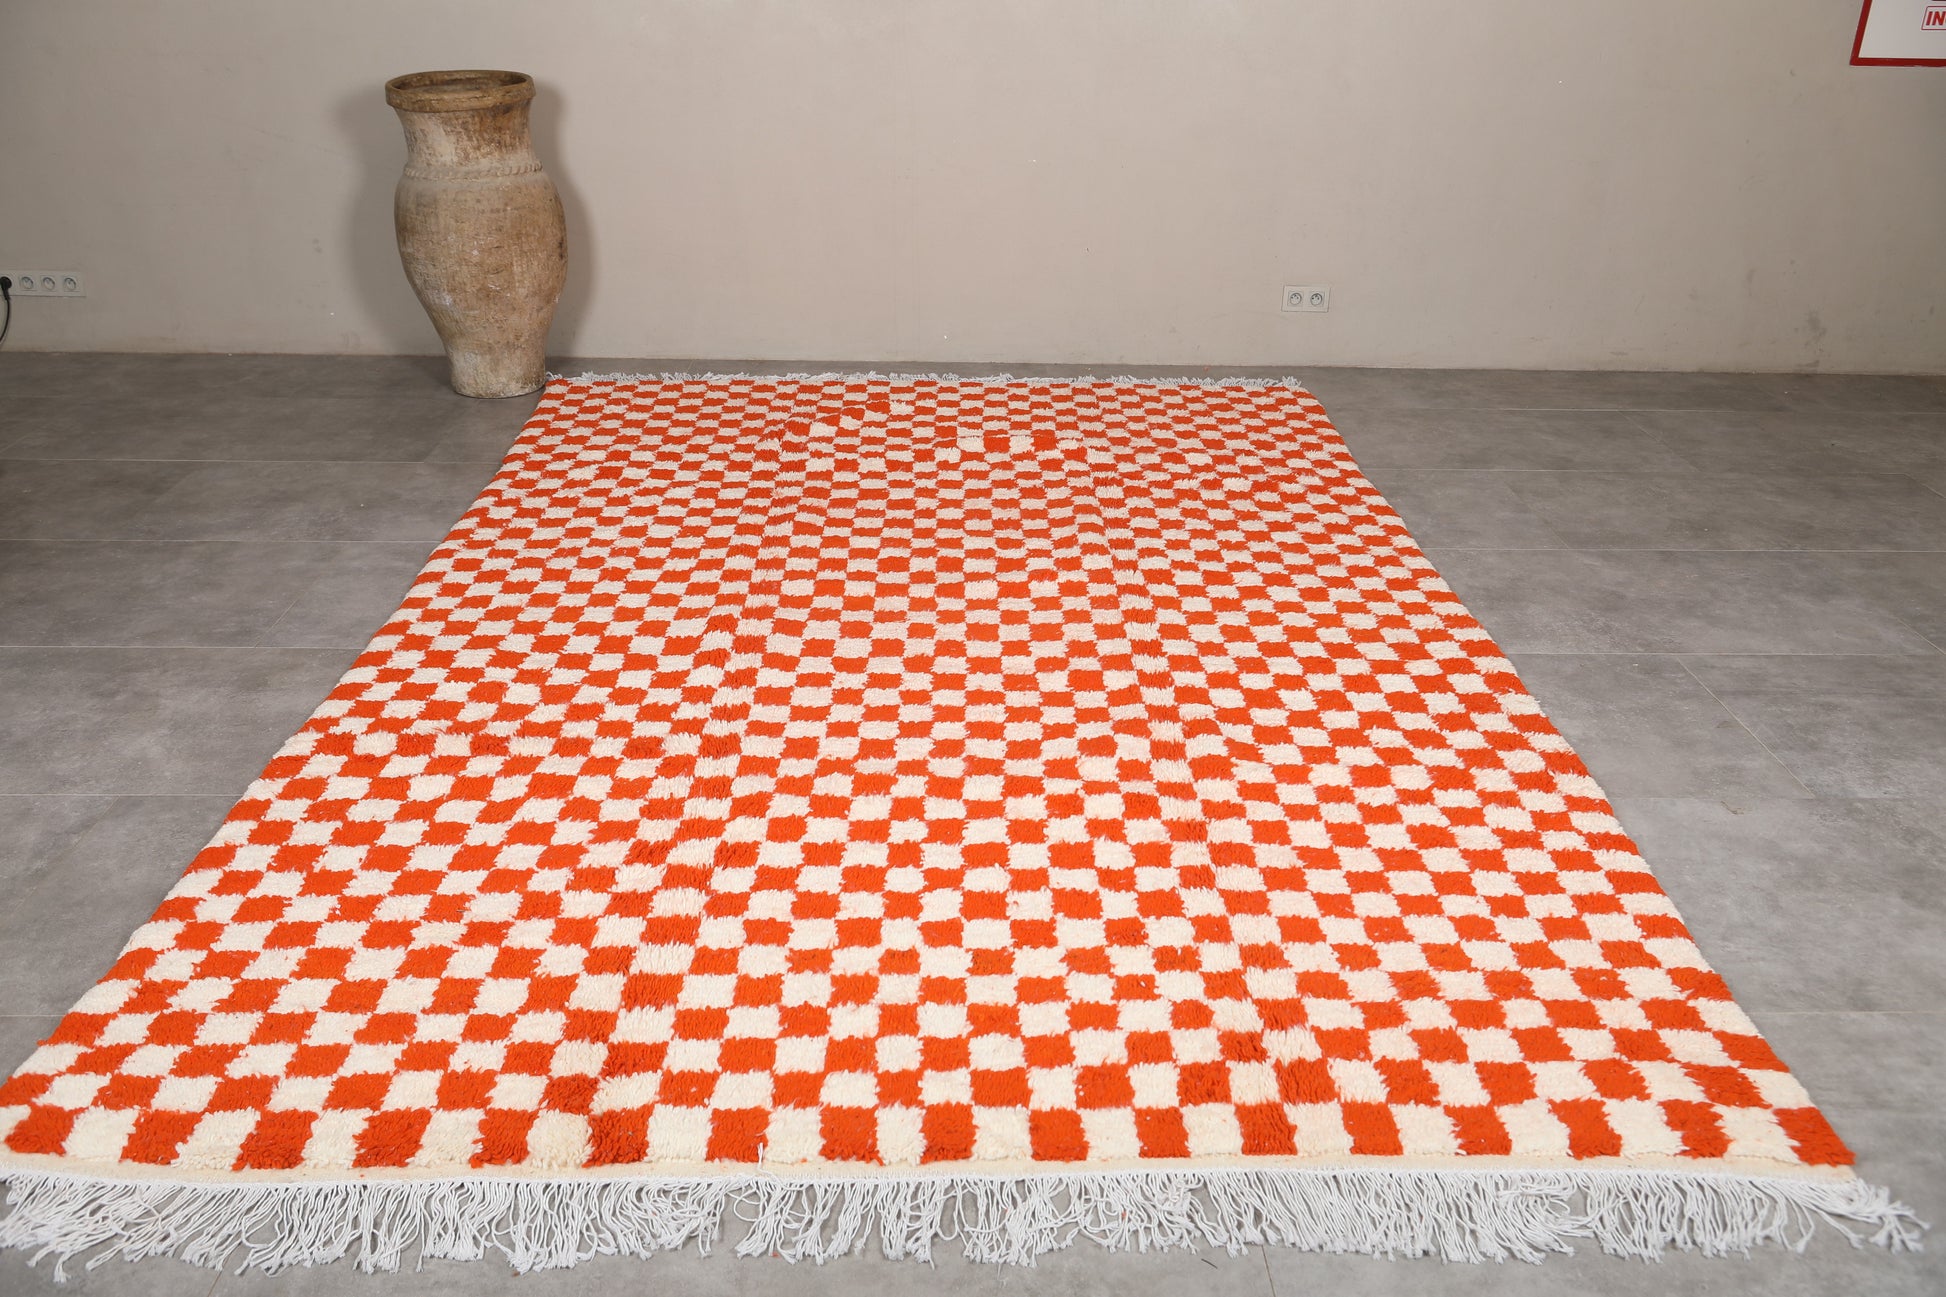 Moroccan rug 7.8 X 11.5 Feet - Beni ourain rugs